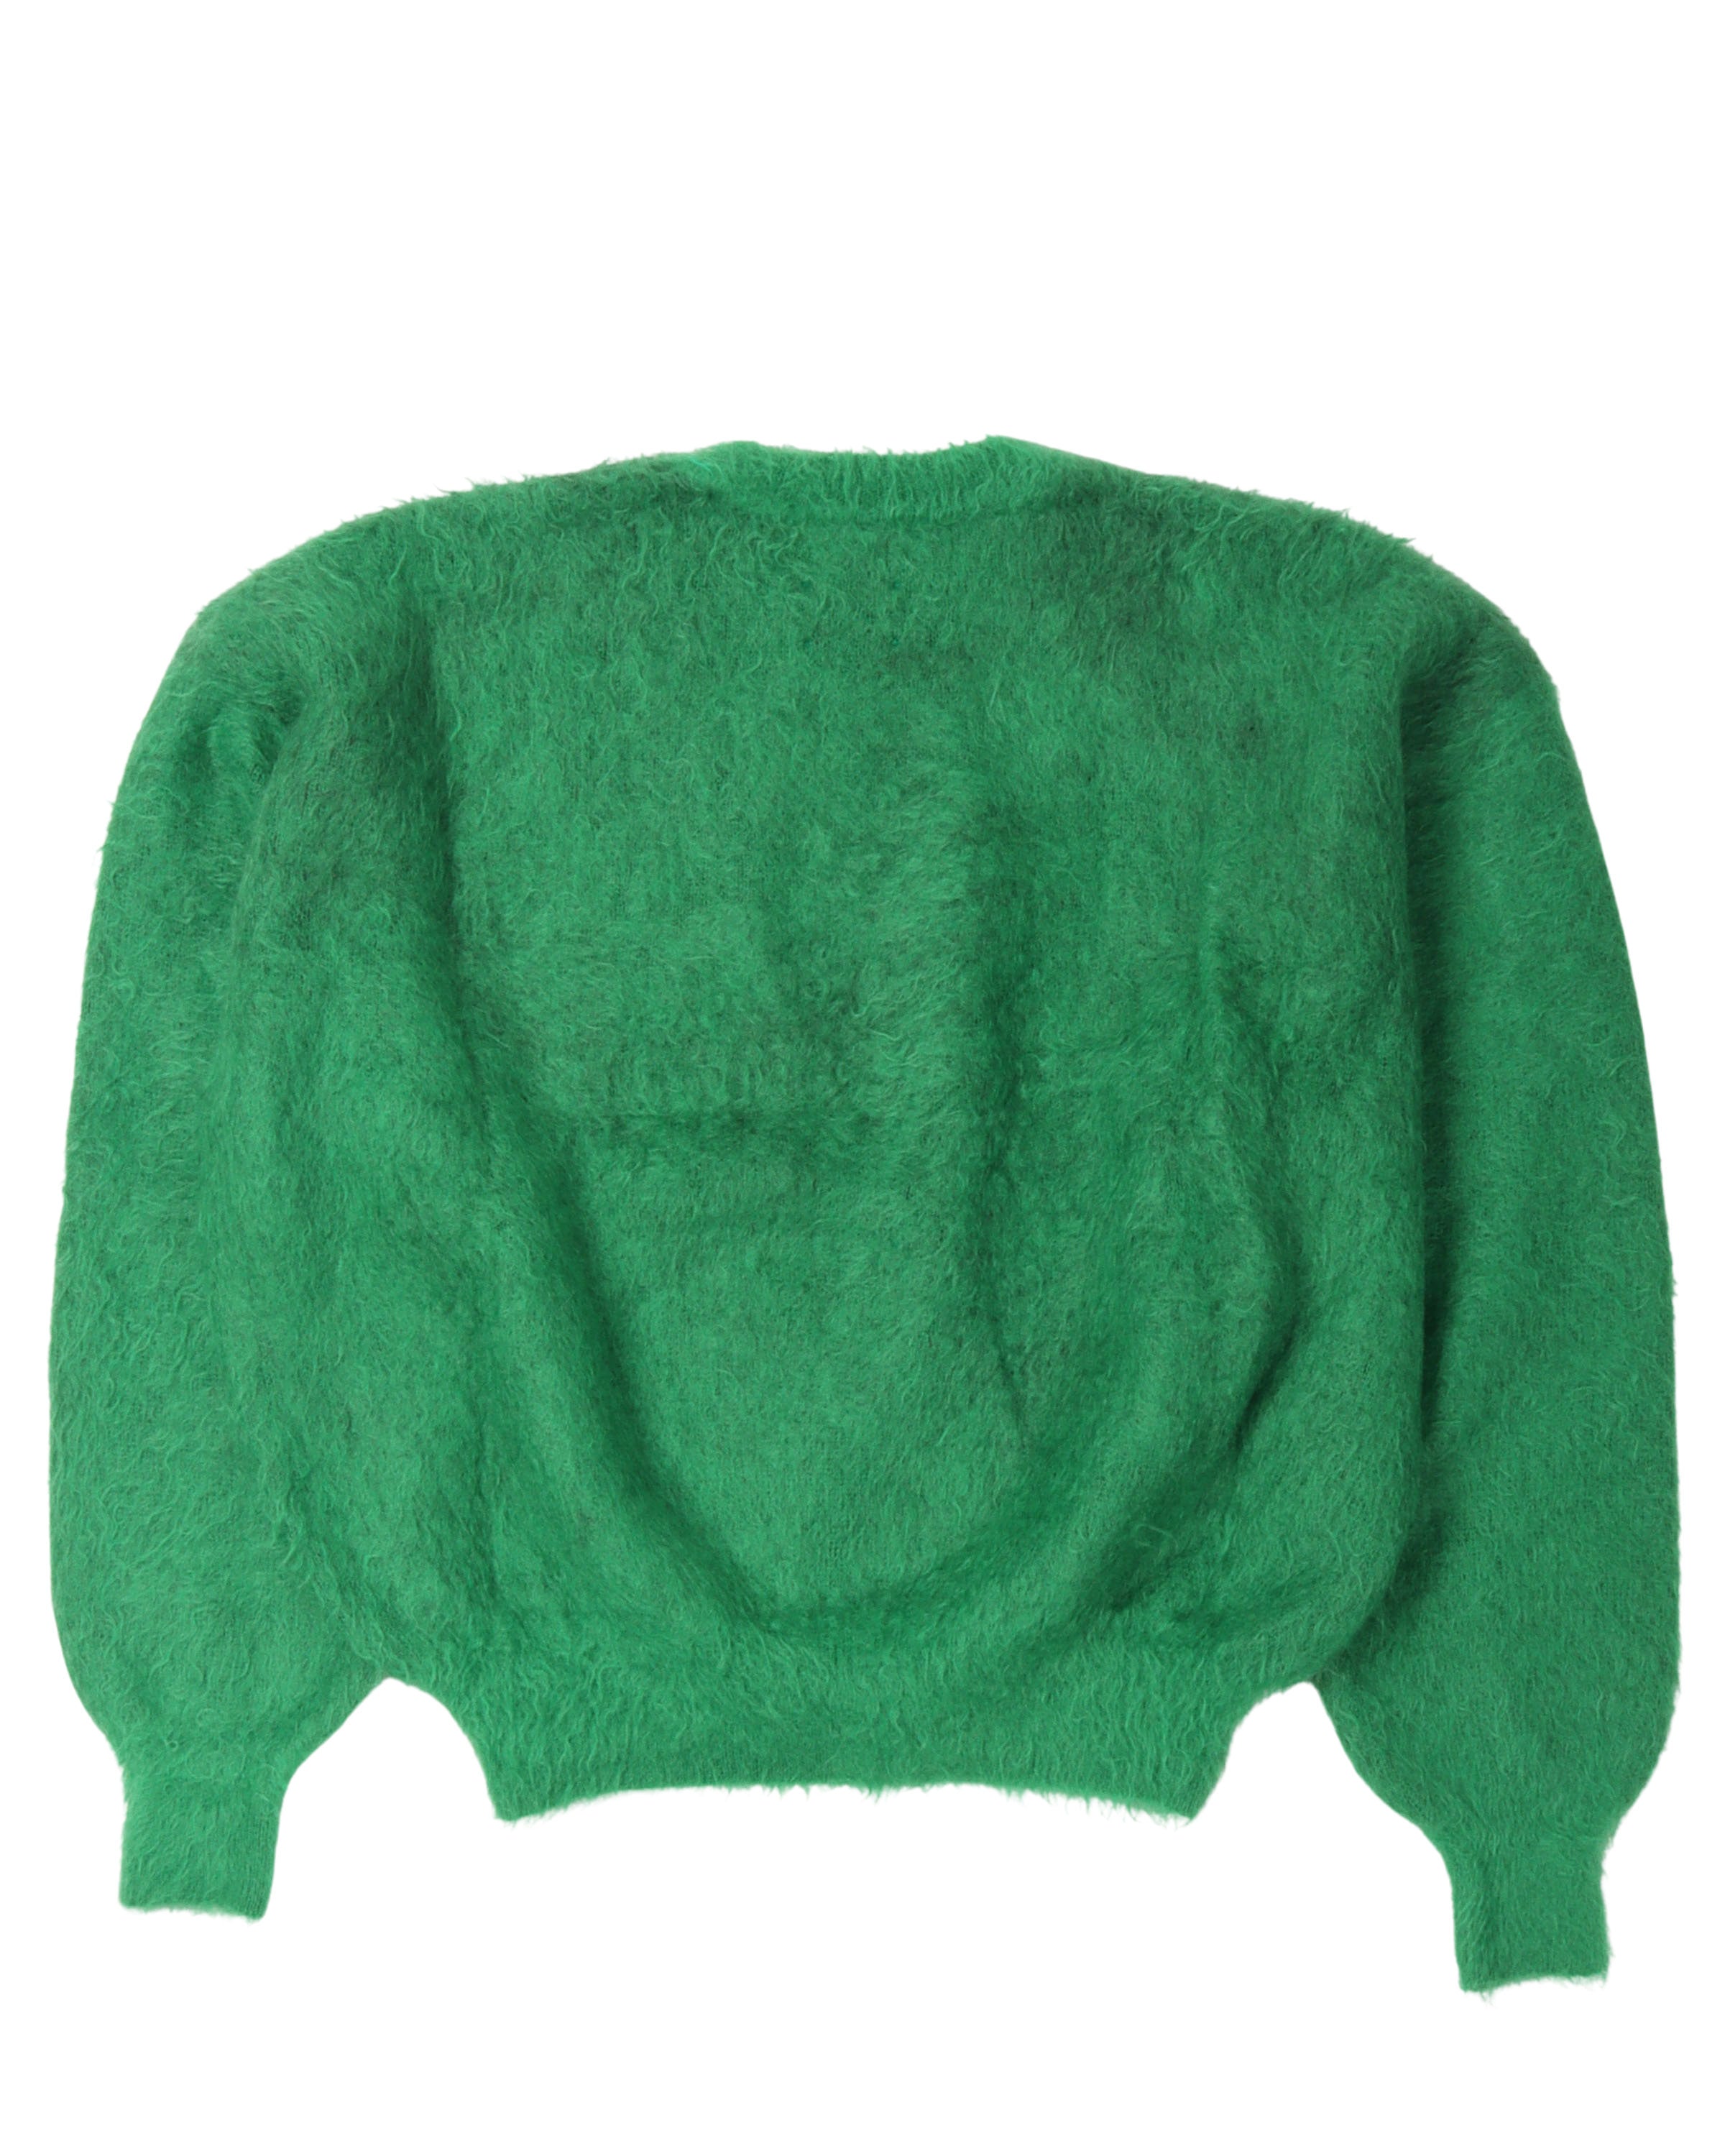 "Saint" Mohair Blend Sweater